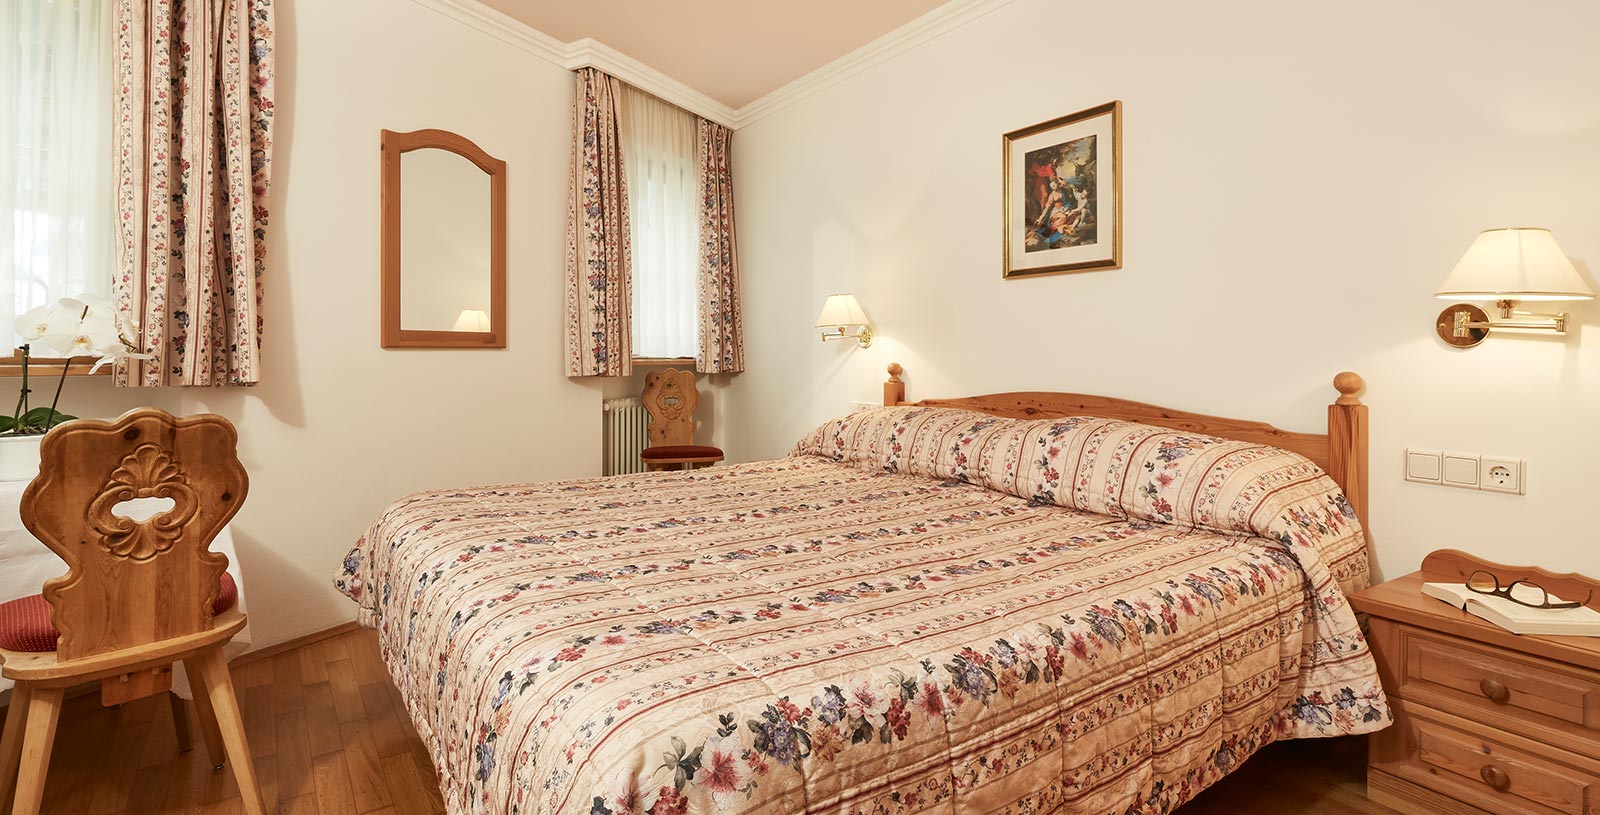 il letto king size di una casa di vacanza a Corvara, tende e biancheria da letto dello stesso motivo floreale